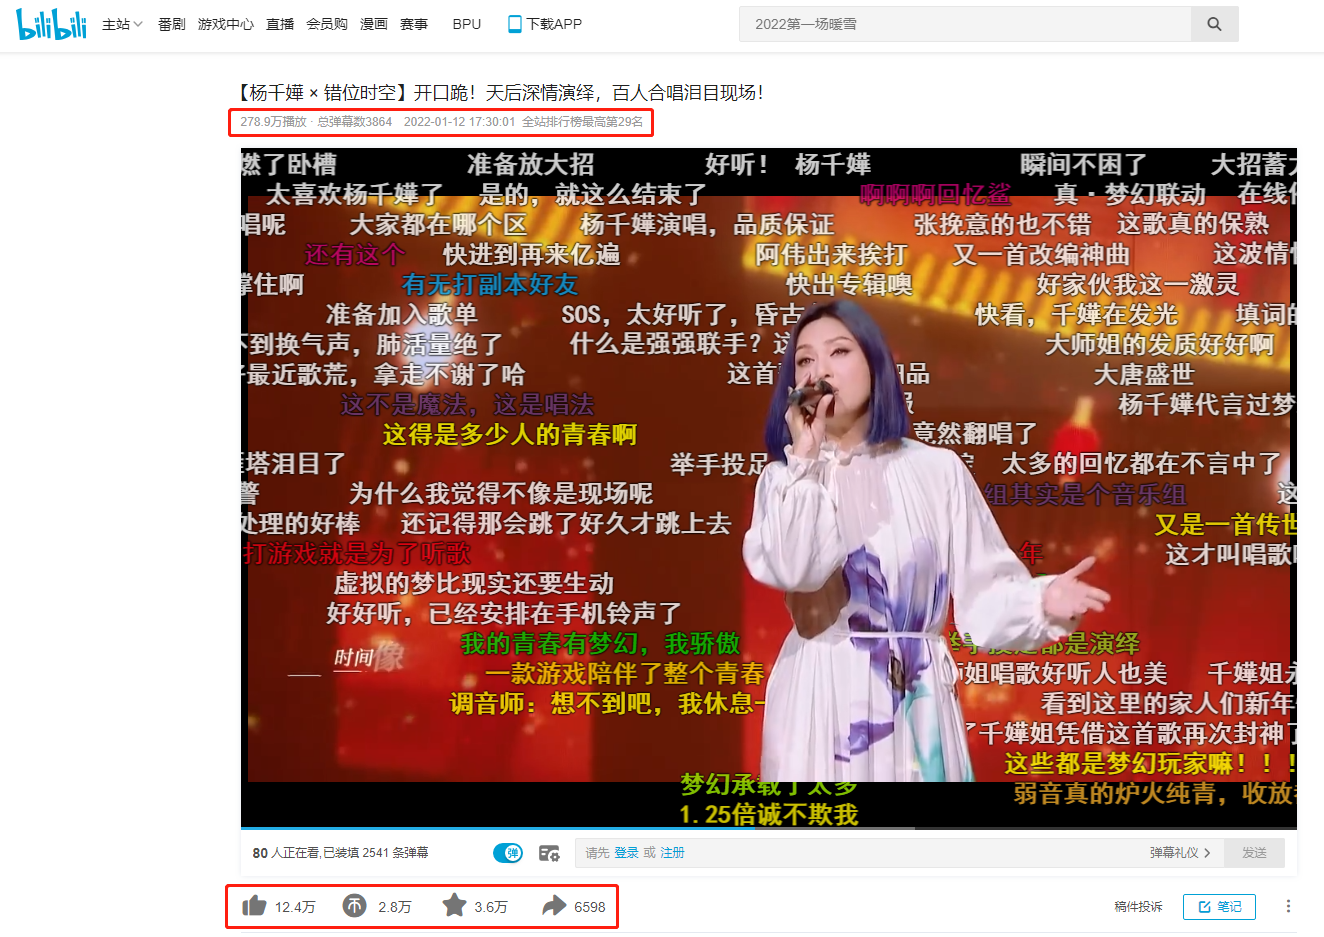 大师姐杨千嬅献唱梦幻西游版《错位时空》，引来无数少侠回忆青春